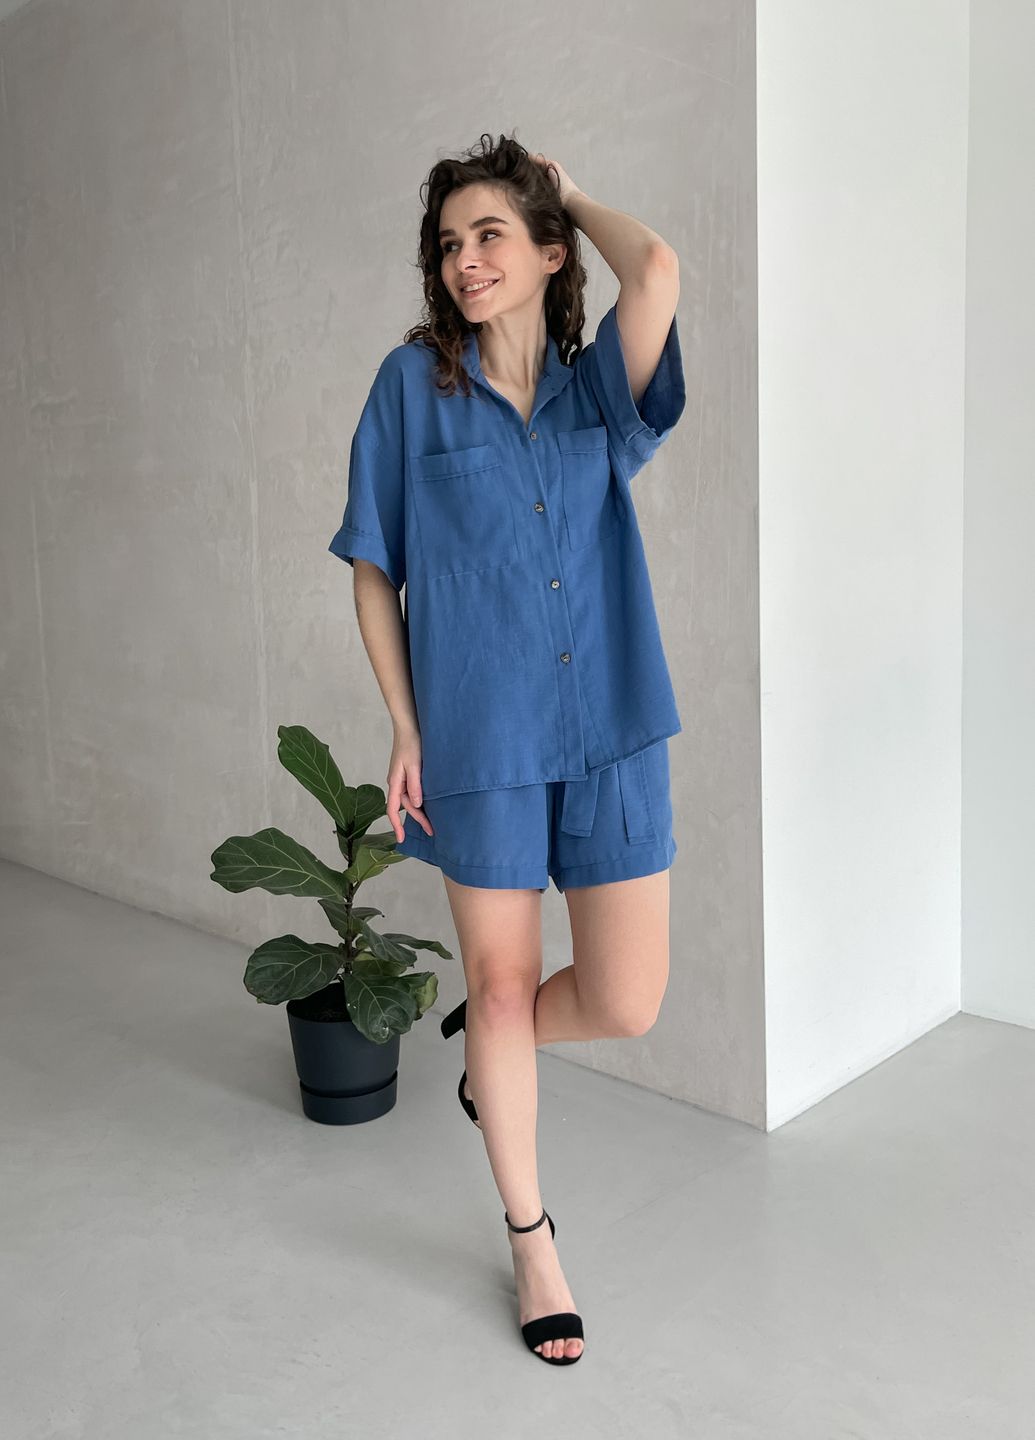 Купить Женская льняная рубашка с коротким рукавом синяя Merlini Фриули 200000143, размер 42-44 в интернет-магазине